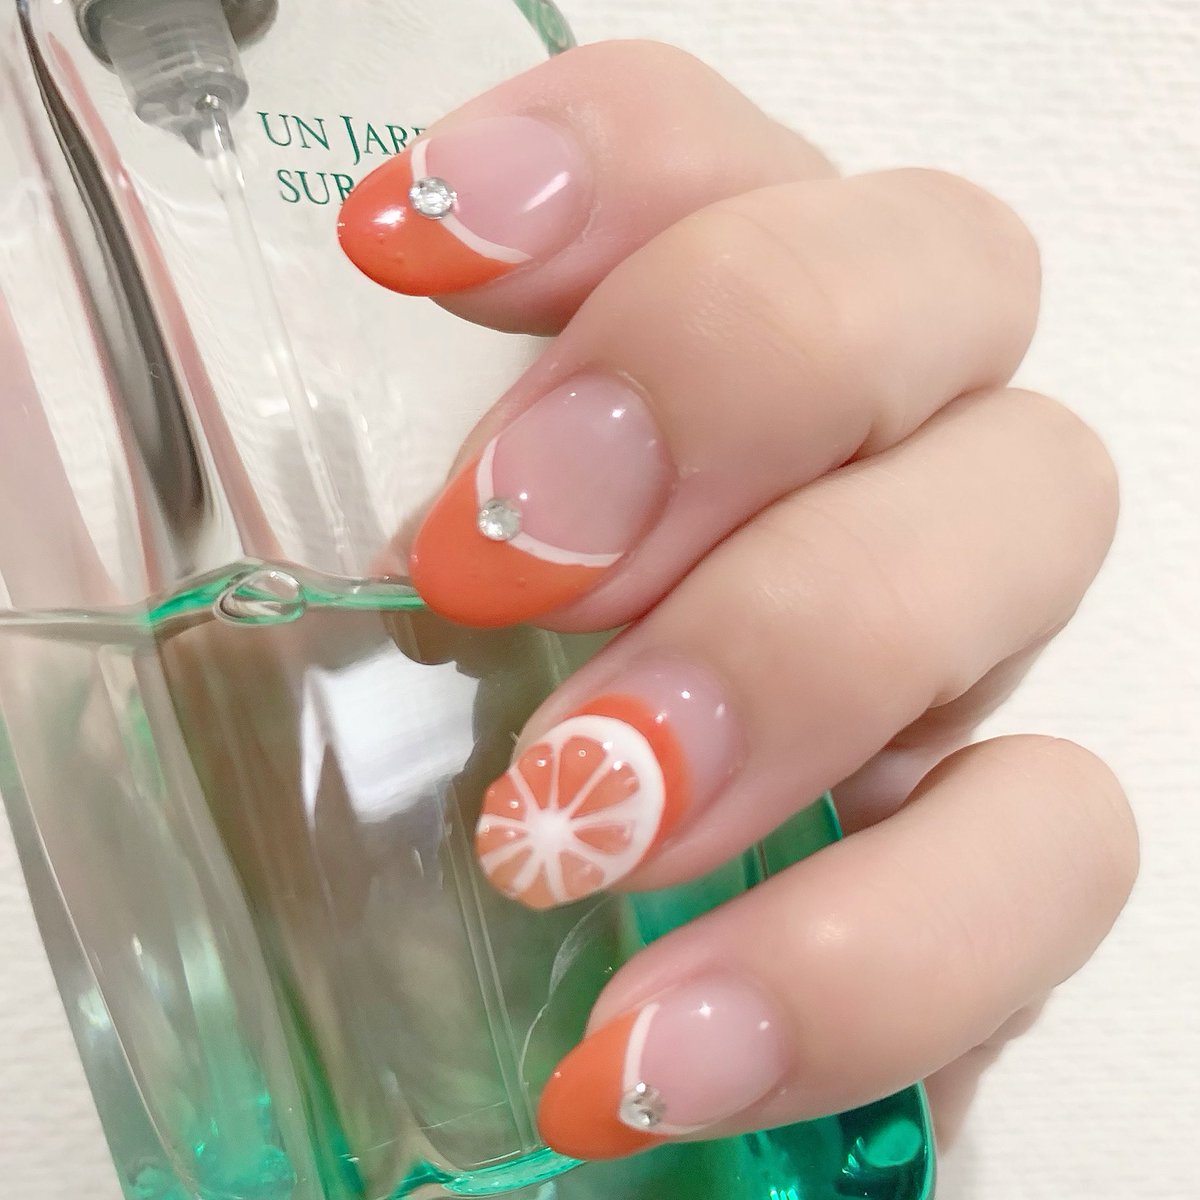 オレンジネイル🍊

#nails #nail #orangenails #ネイル好きな人と繋がりたい